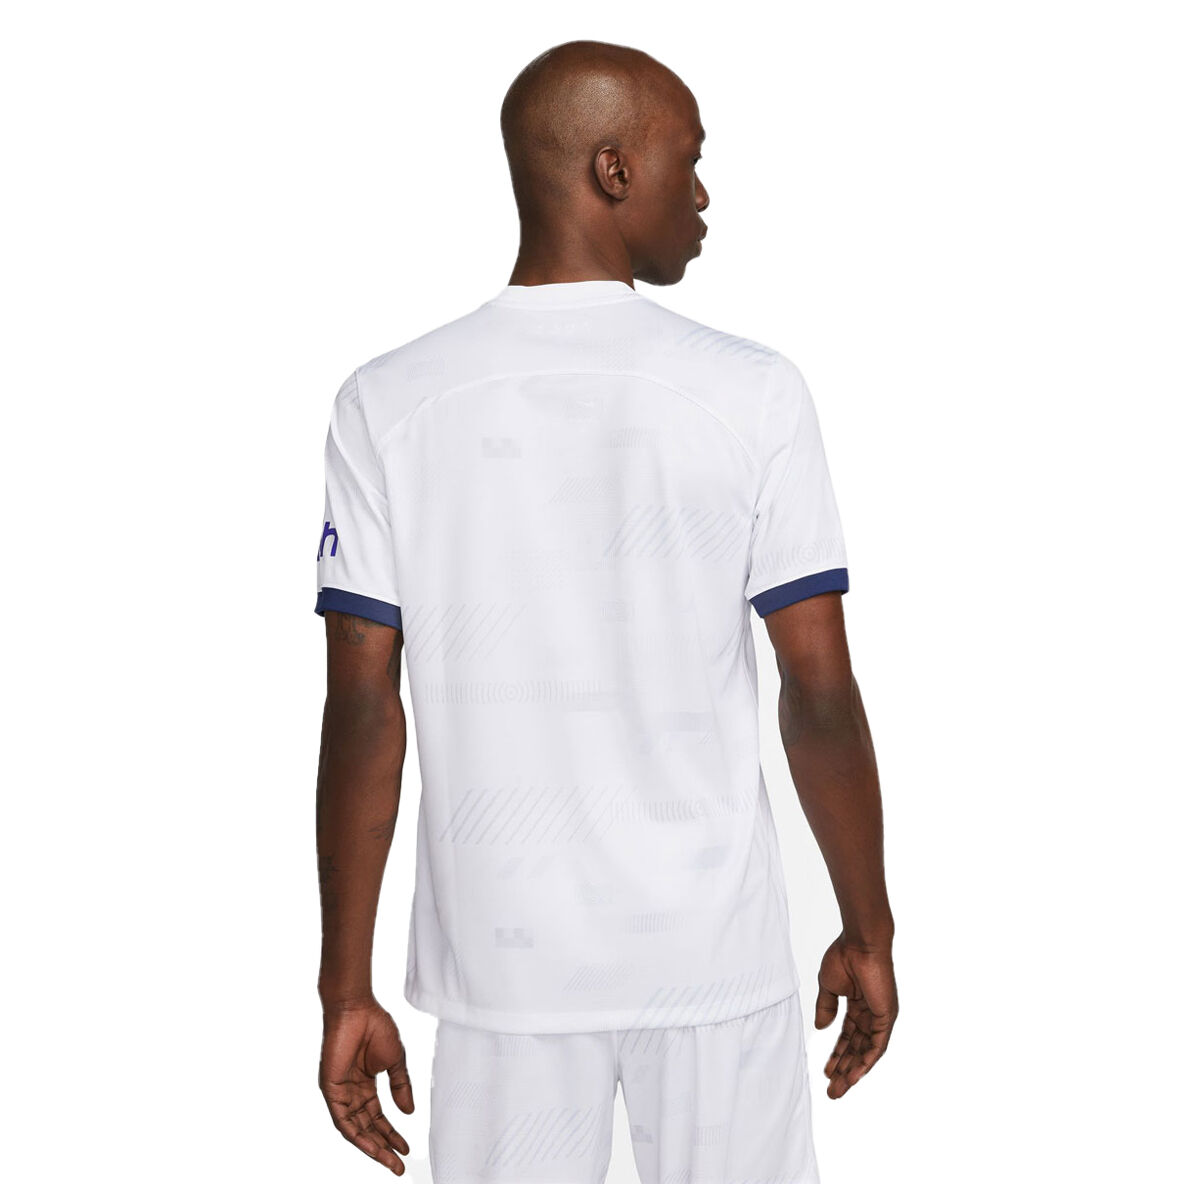 Nike Tottenham Hotspur Stadium Air Max Men's Football Shirt Medium